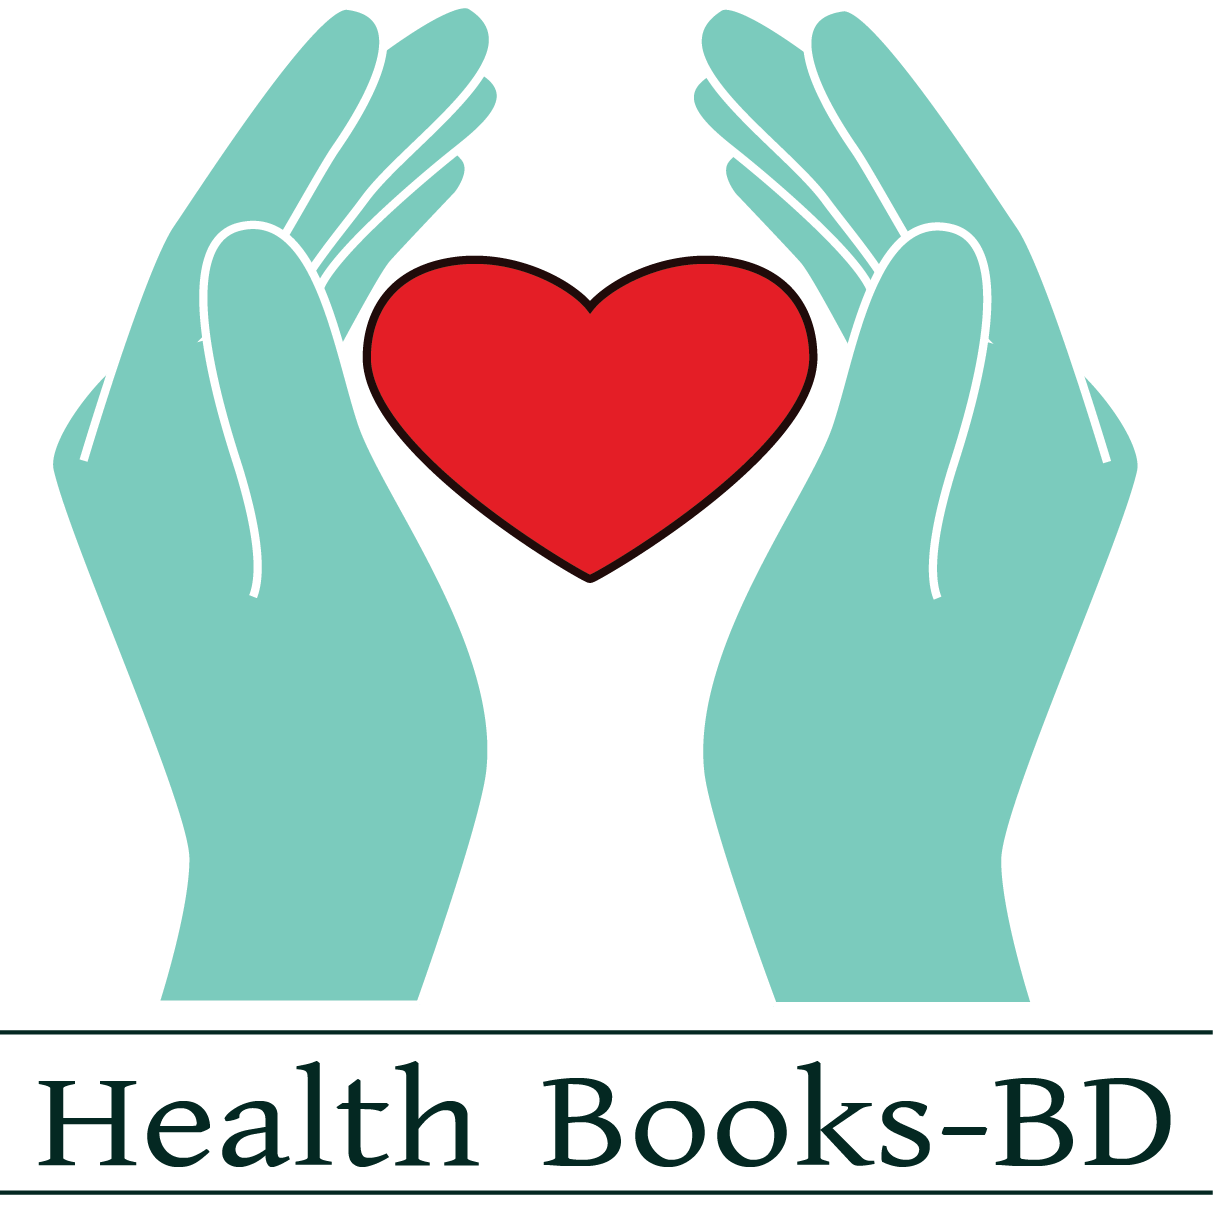 Health Books-BD